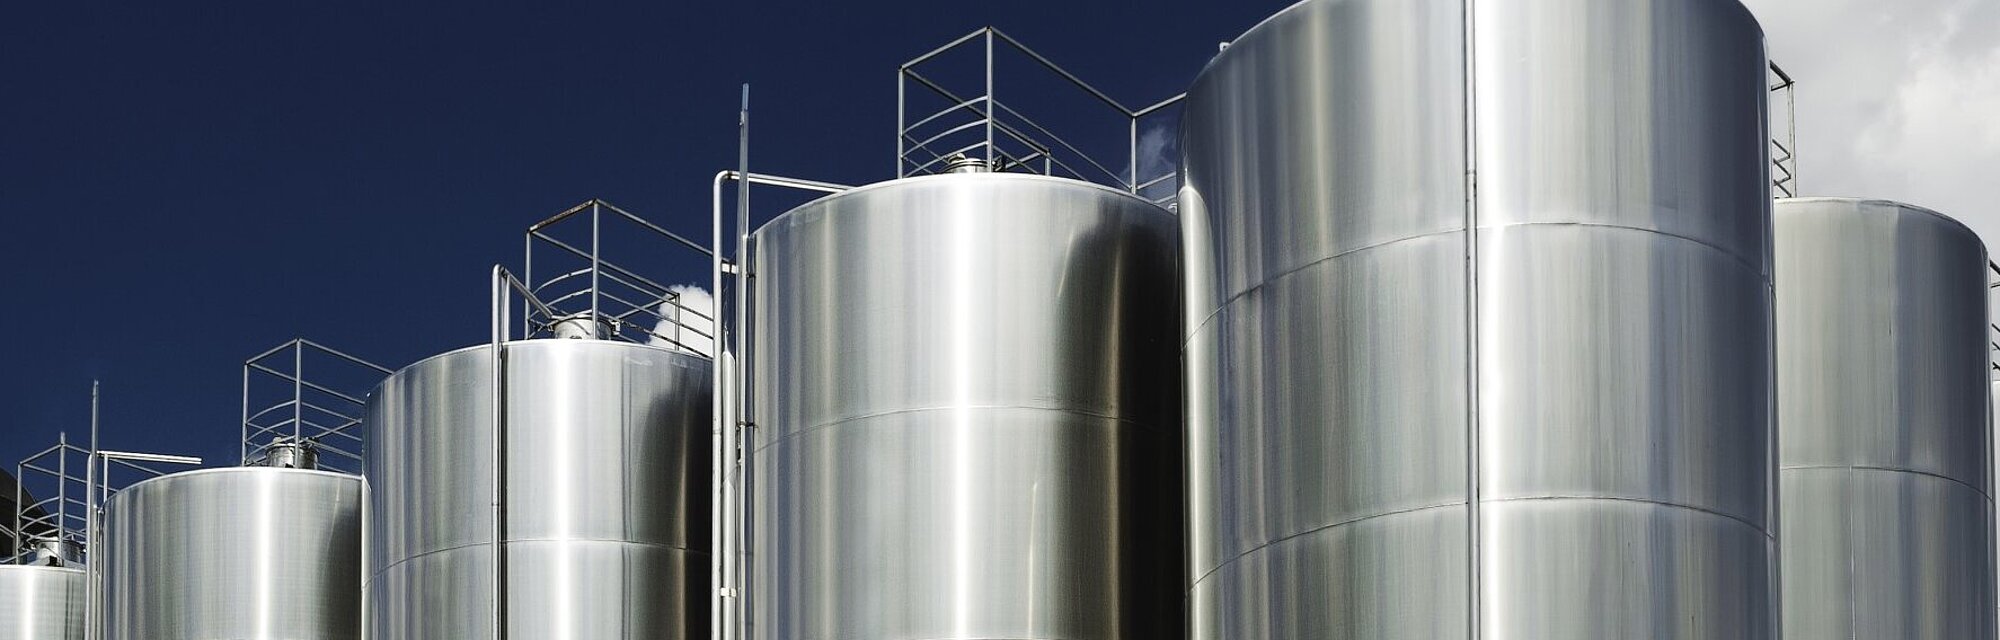 Protección de tanques de almacenamiento para etanol y otros alcoholes